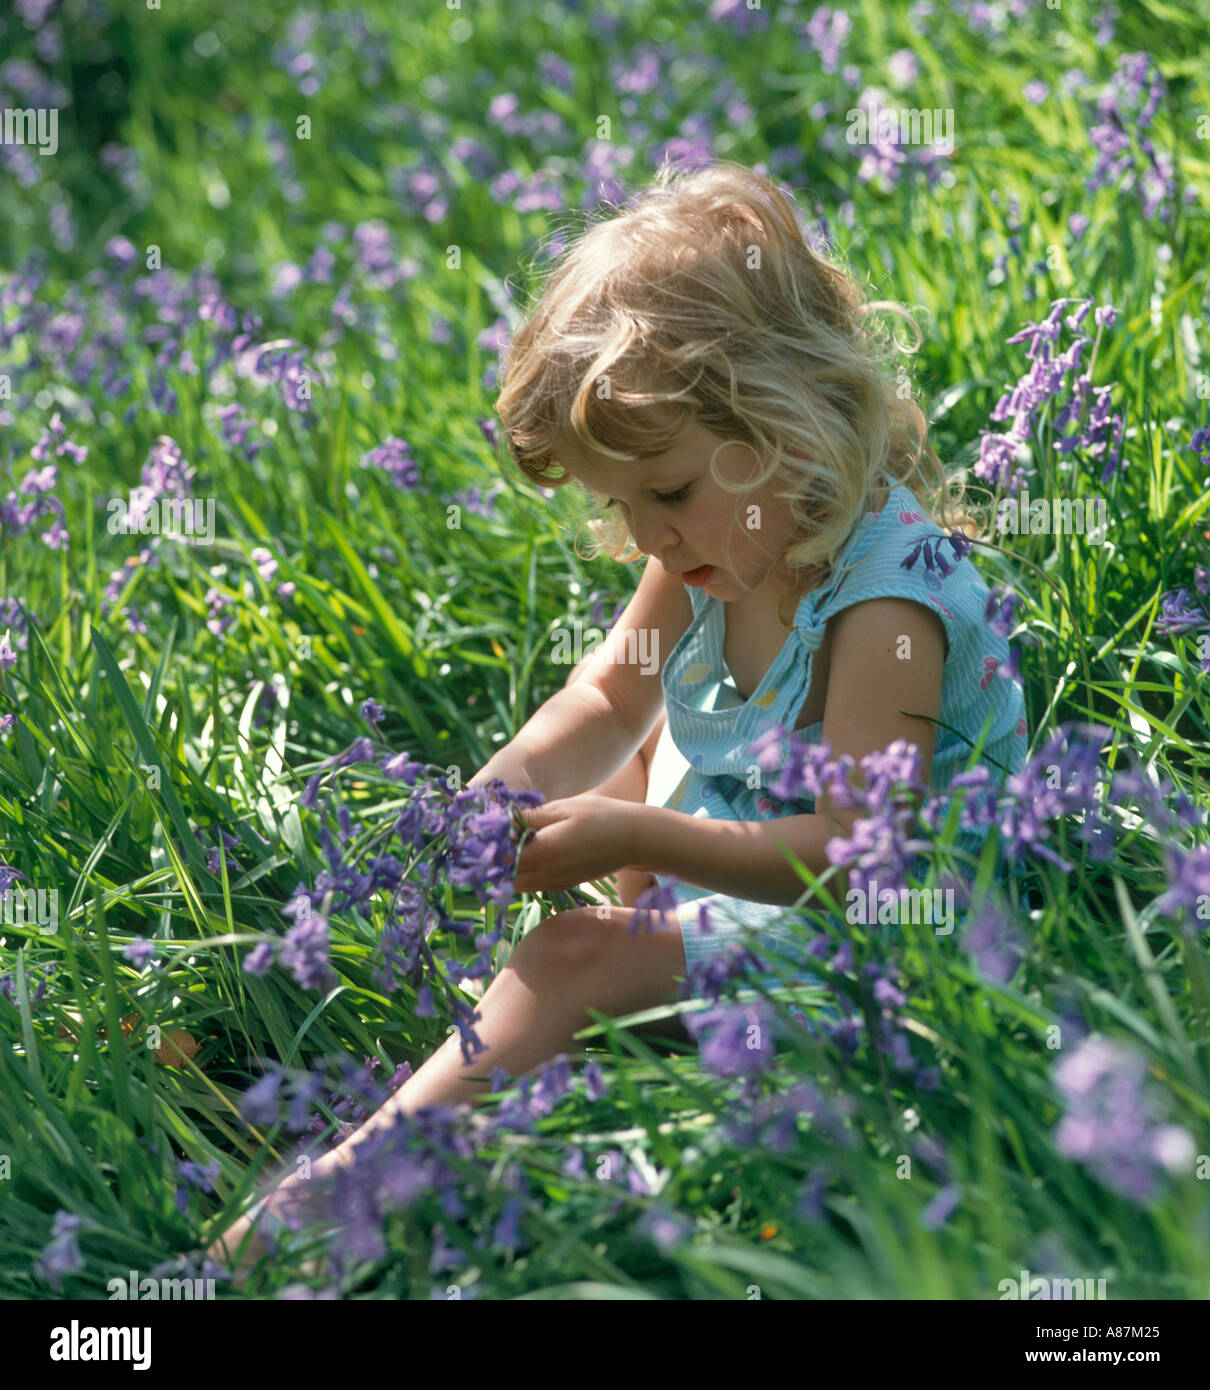 Ritratto di una bambina seduta in un bosco di bluebell, West Yorkshire, Inghilterra, Regno Unito Foto Stock